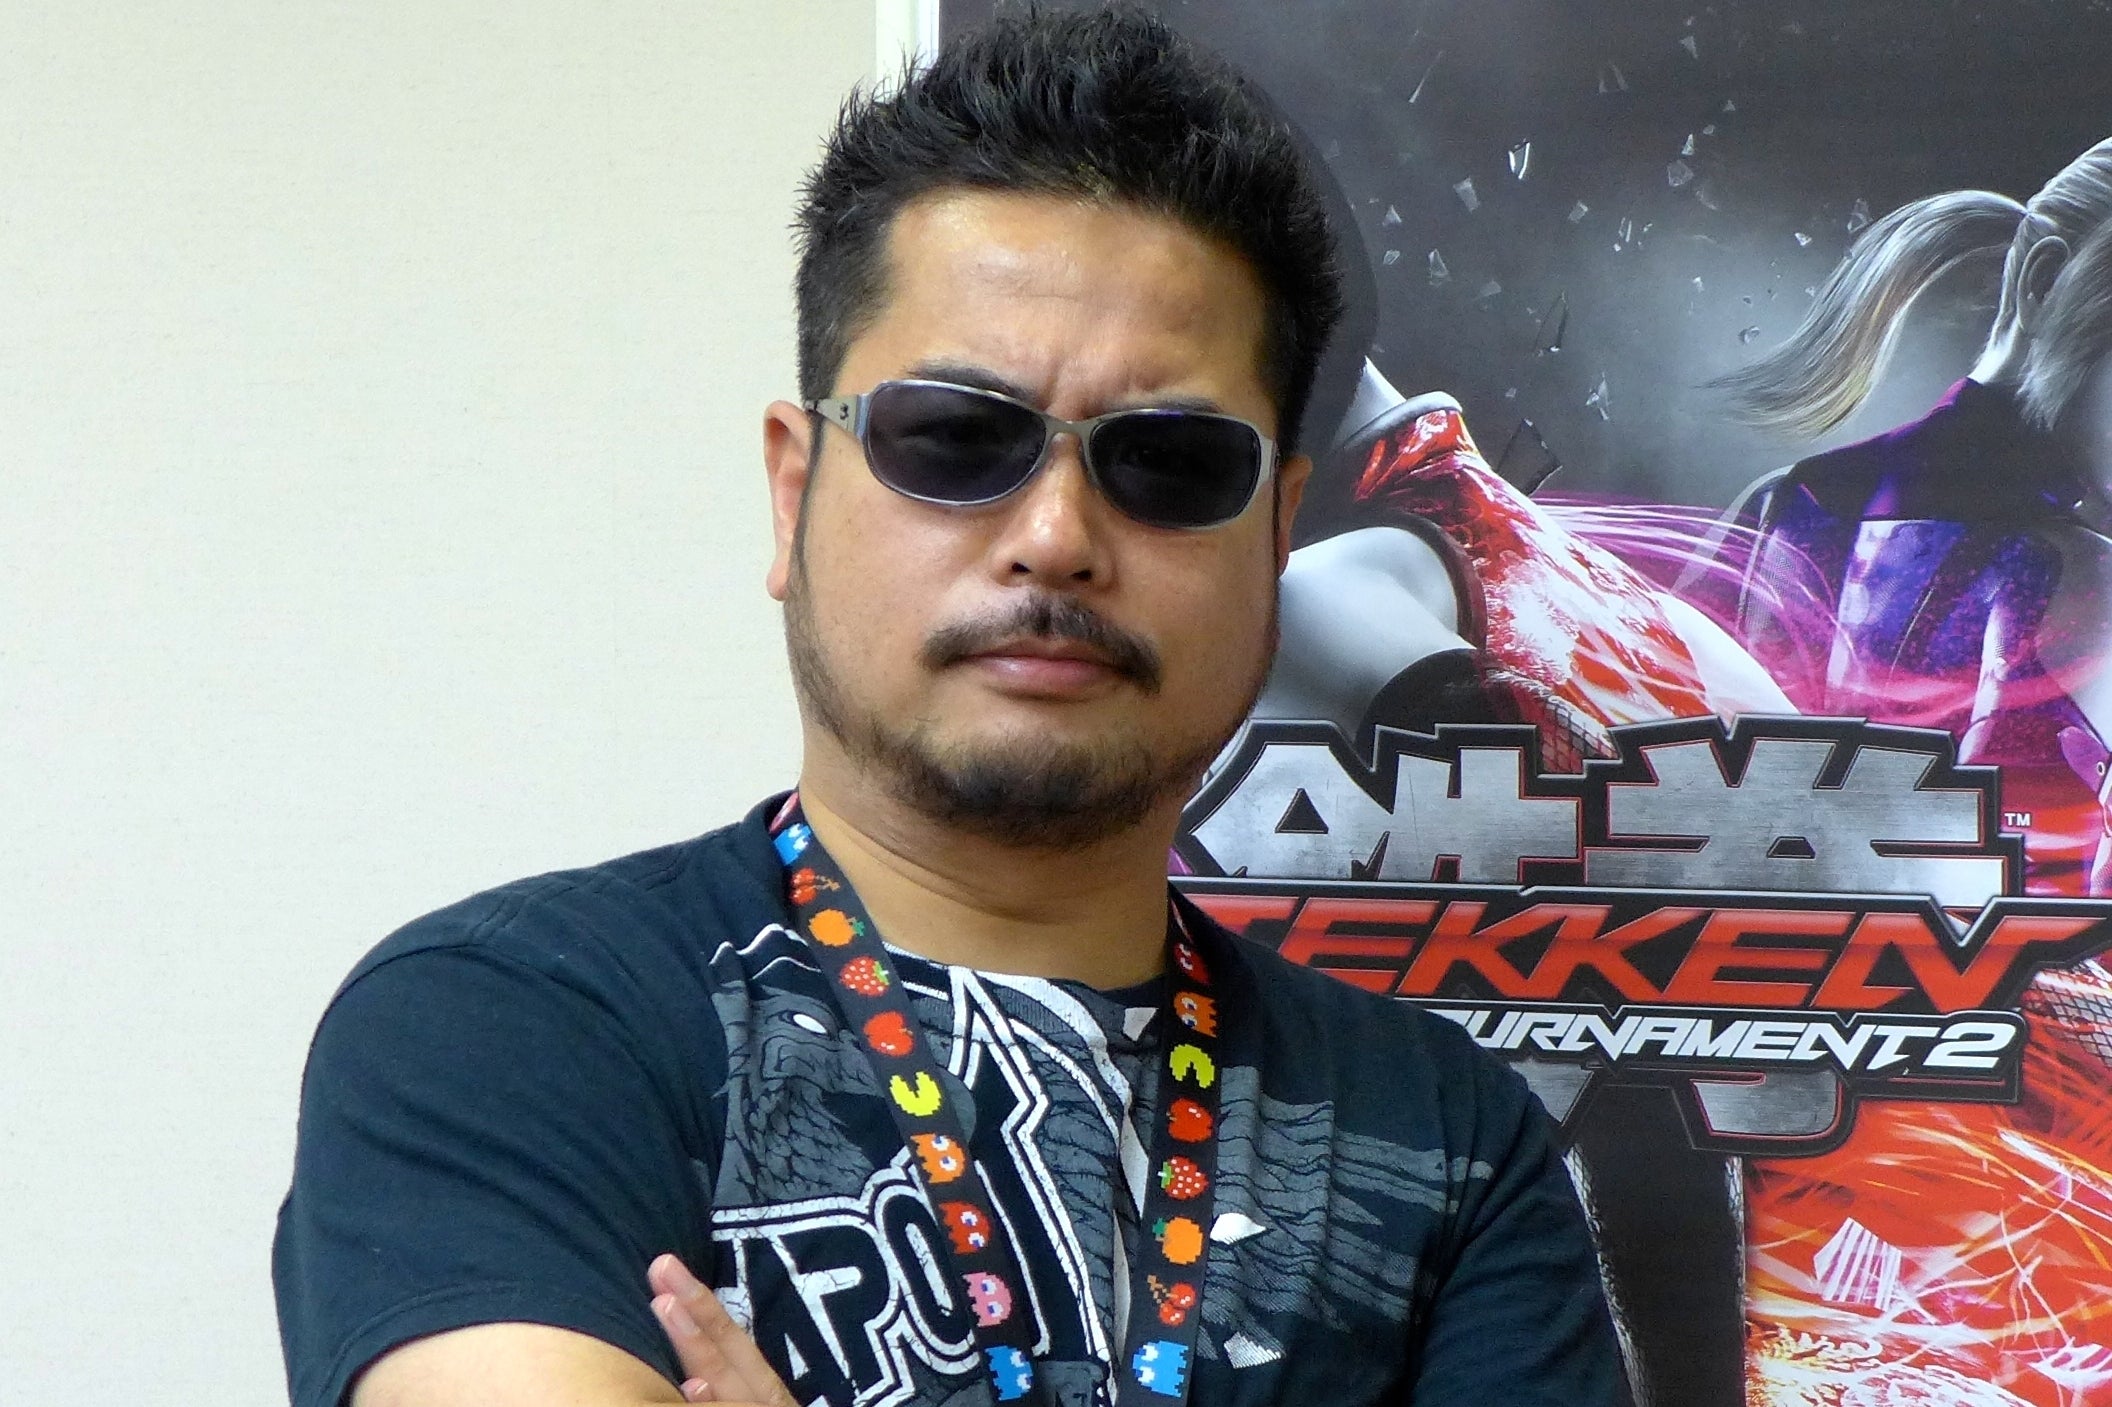 Imagem para Produtor de Tekken está desaparecido há uma semana